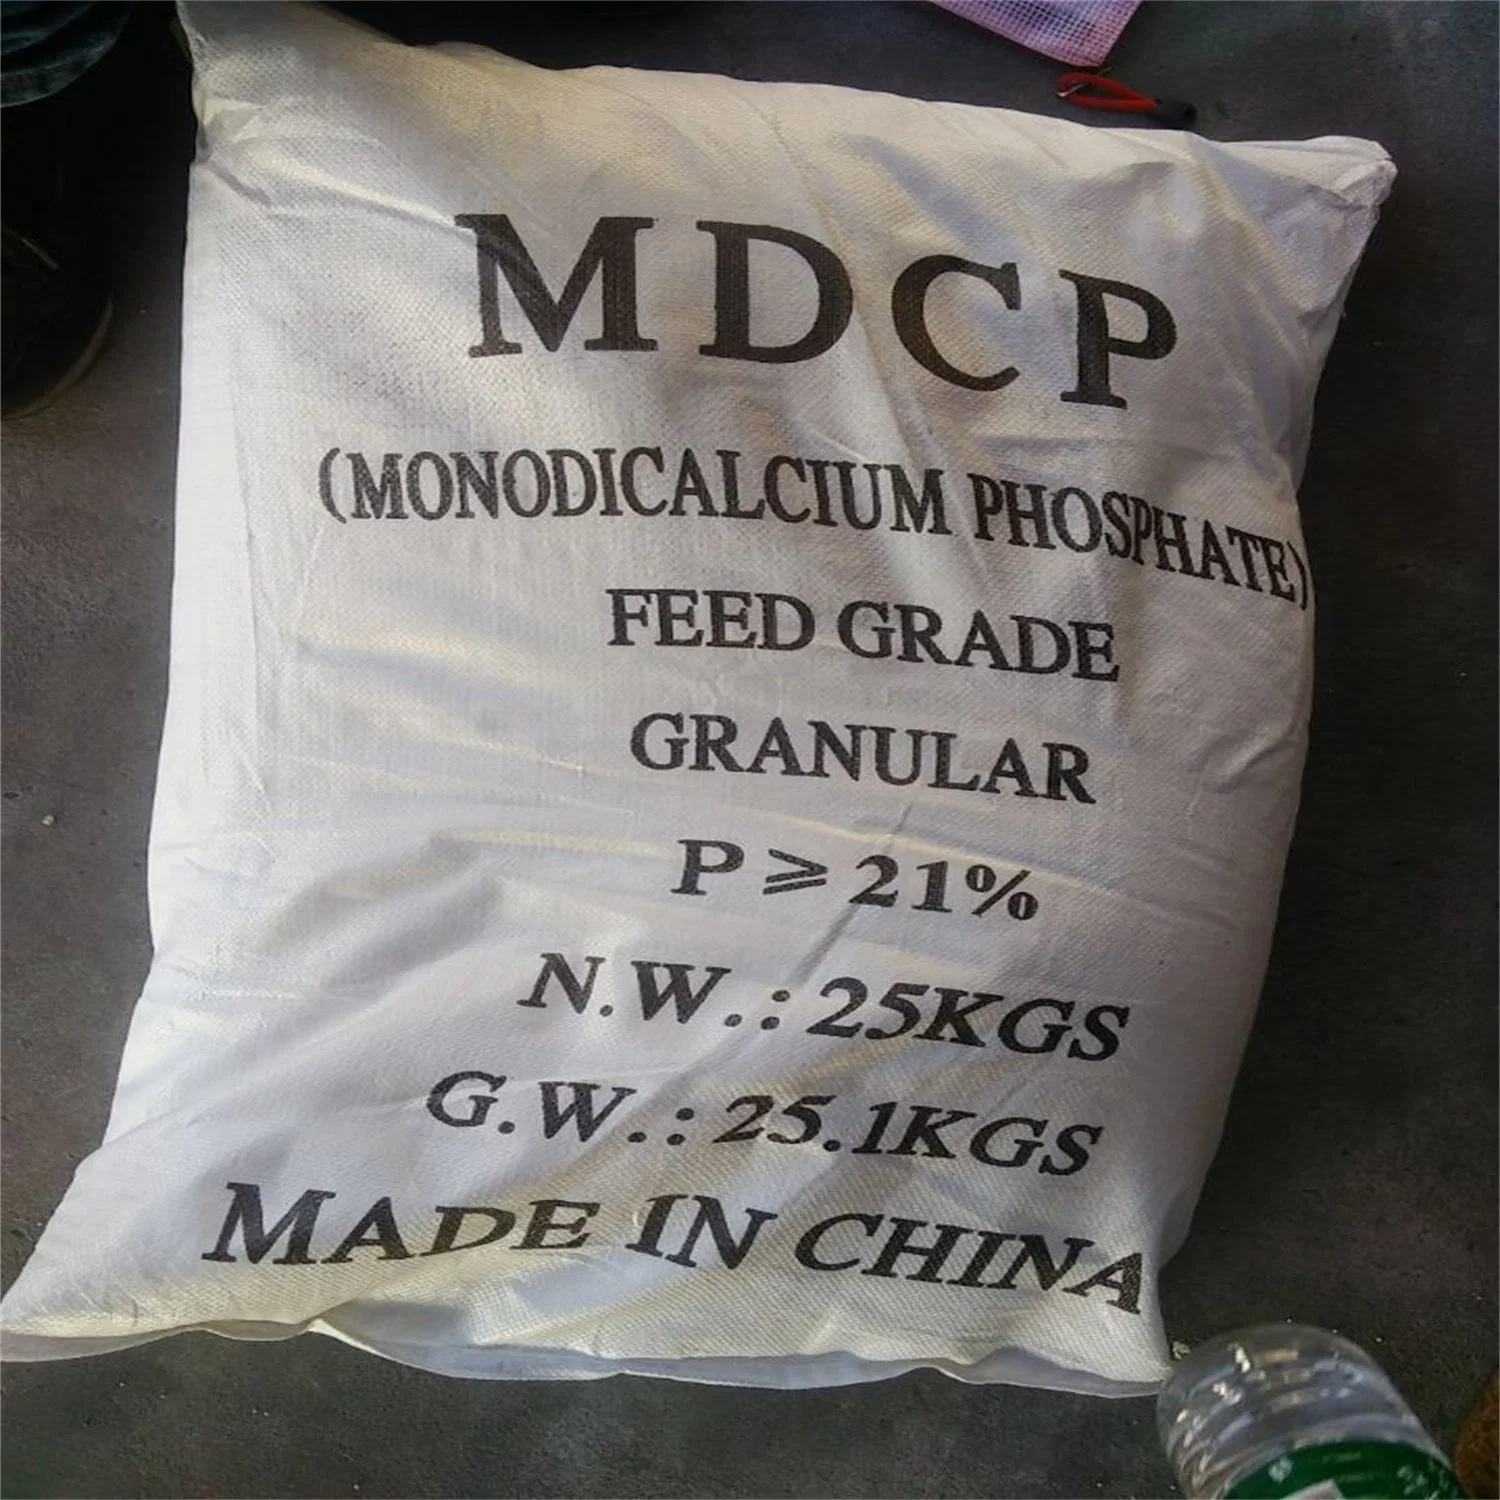 Fosfato monocálcico 21% granular para ruminantes